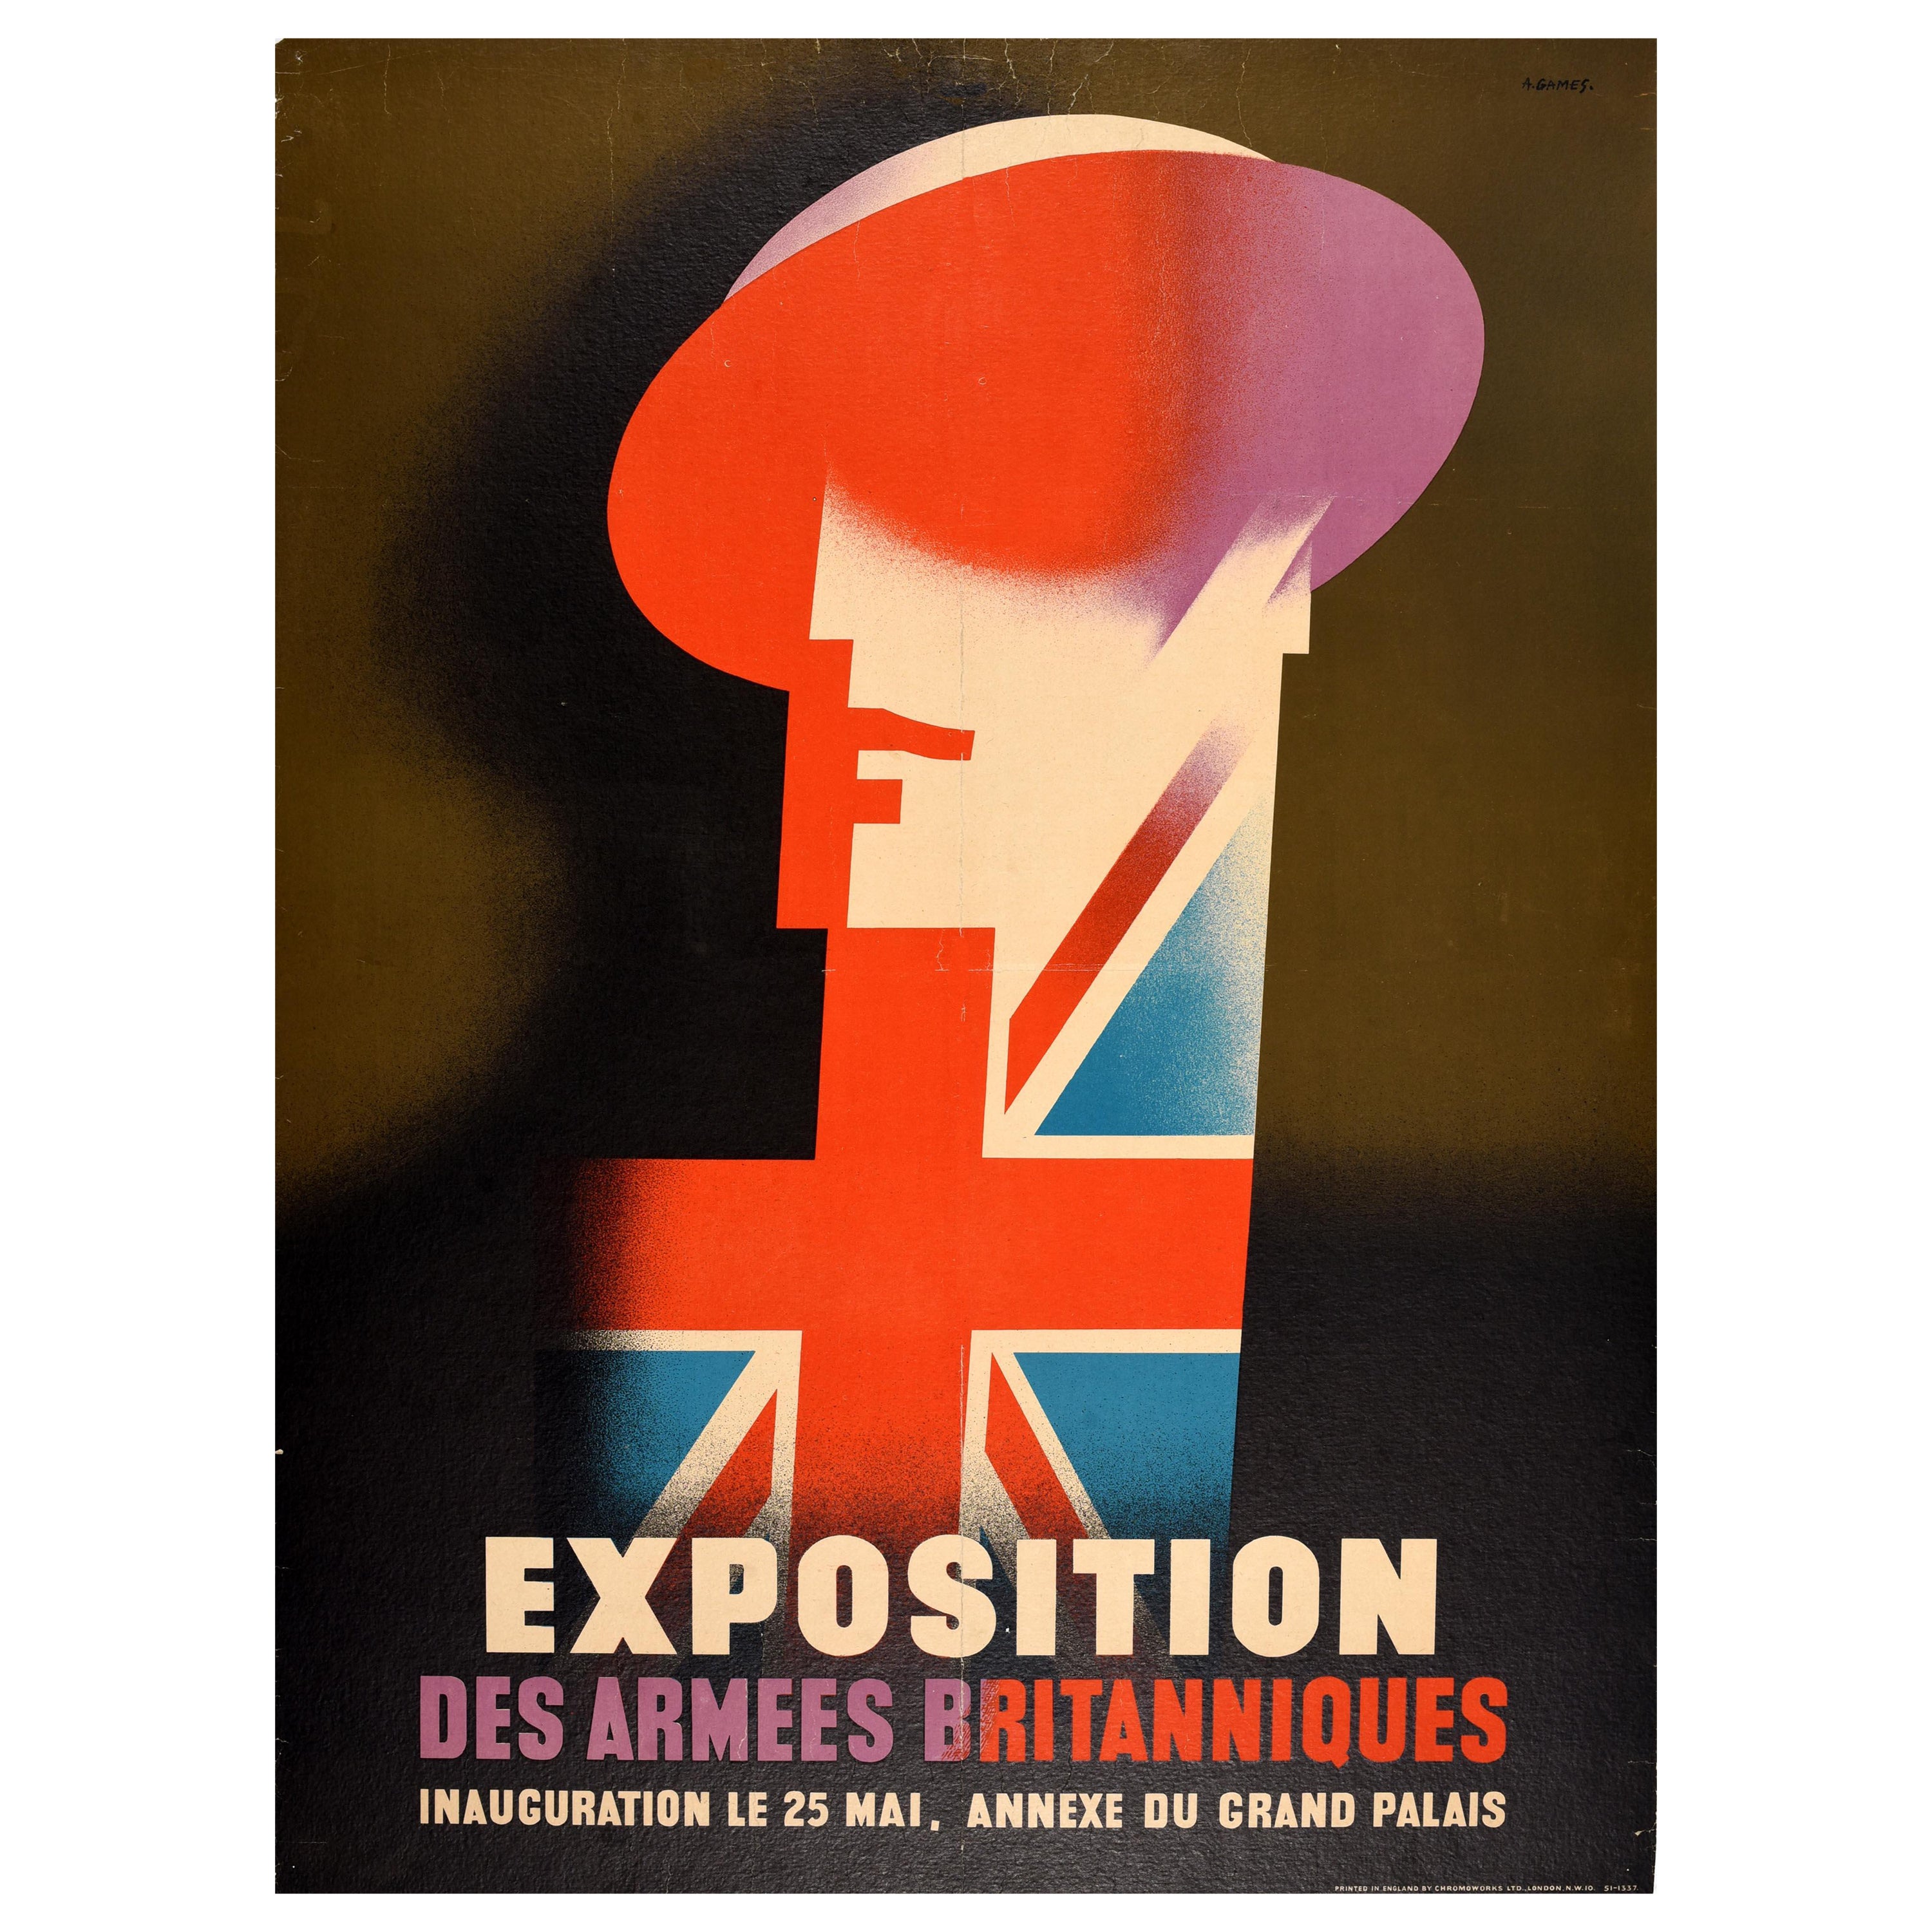 Original Vintage Advertising Poster Britische Armee Ausstellung Abram Games Soldat